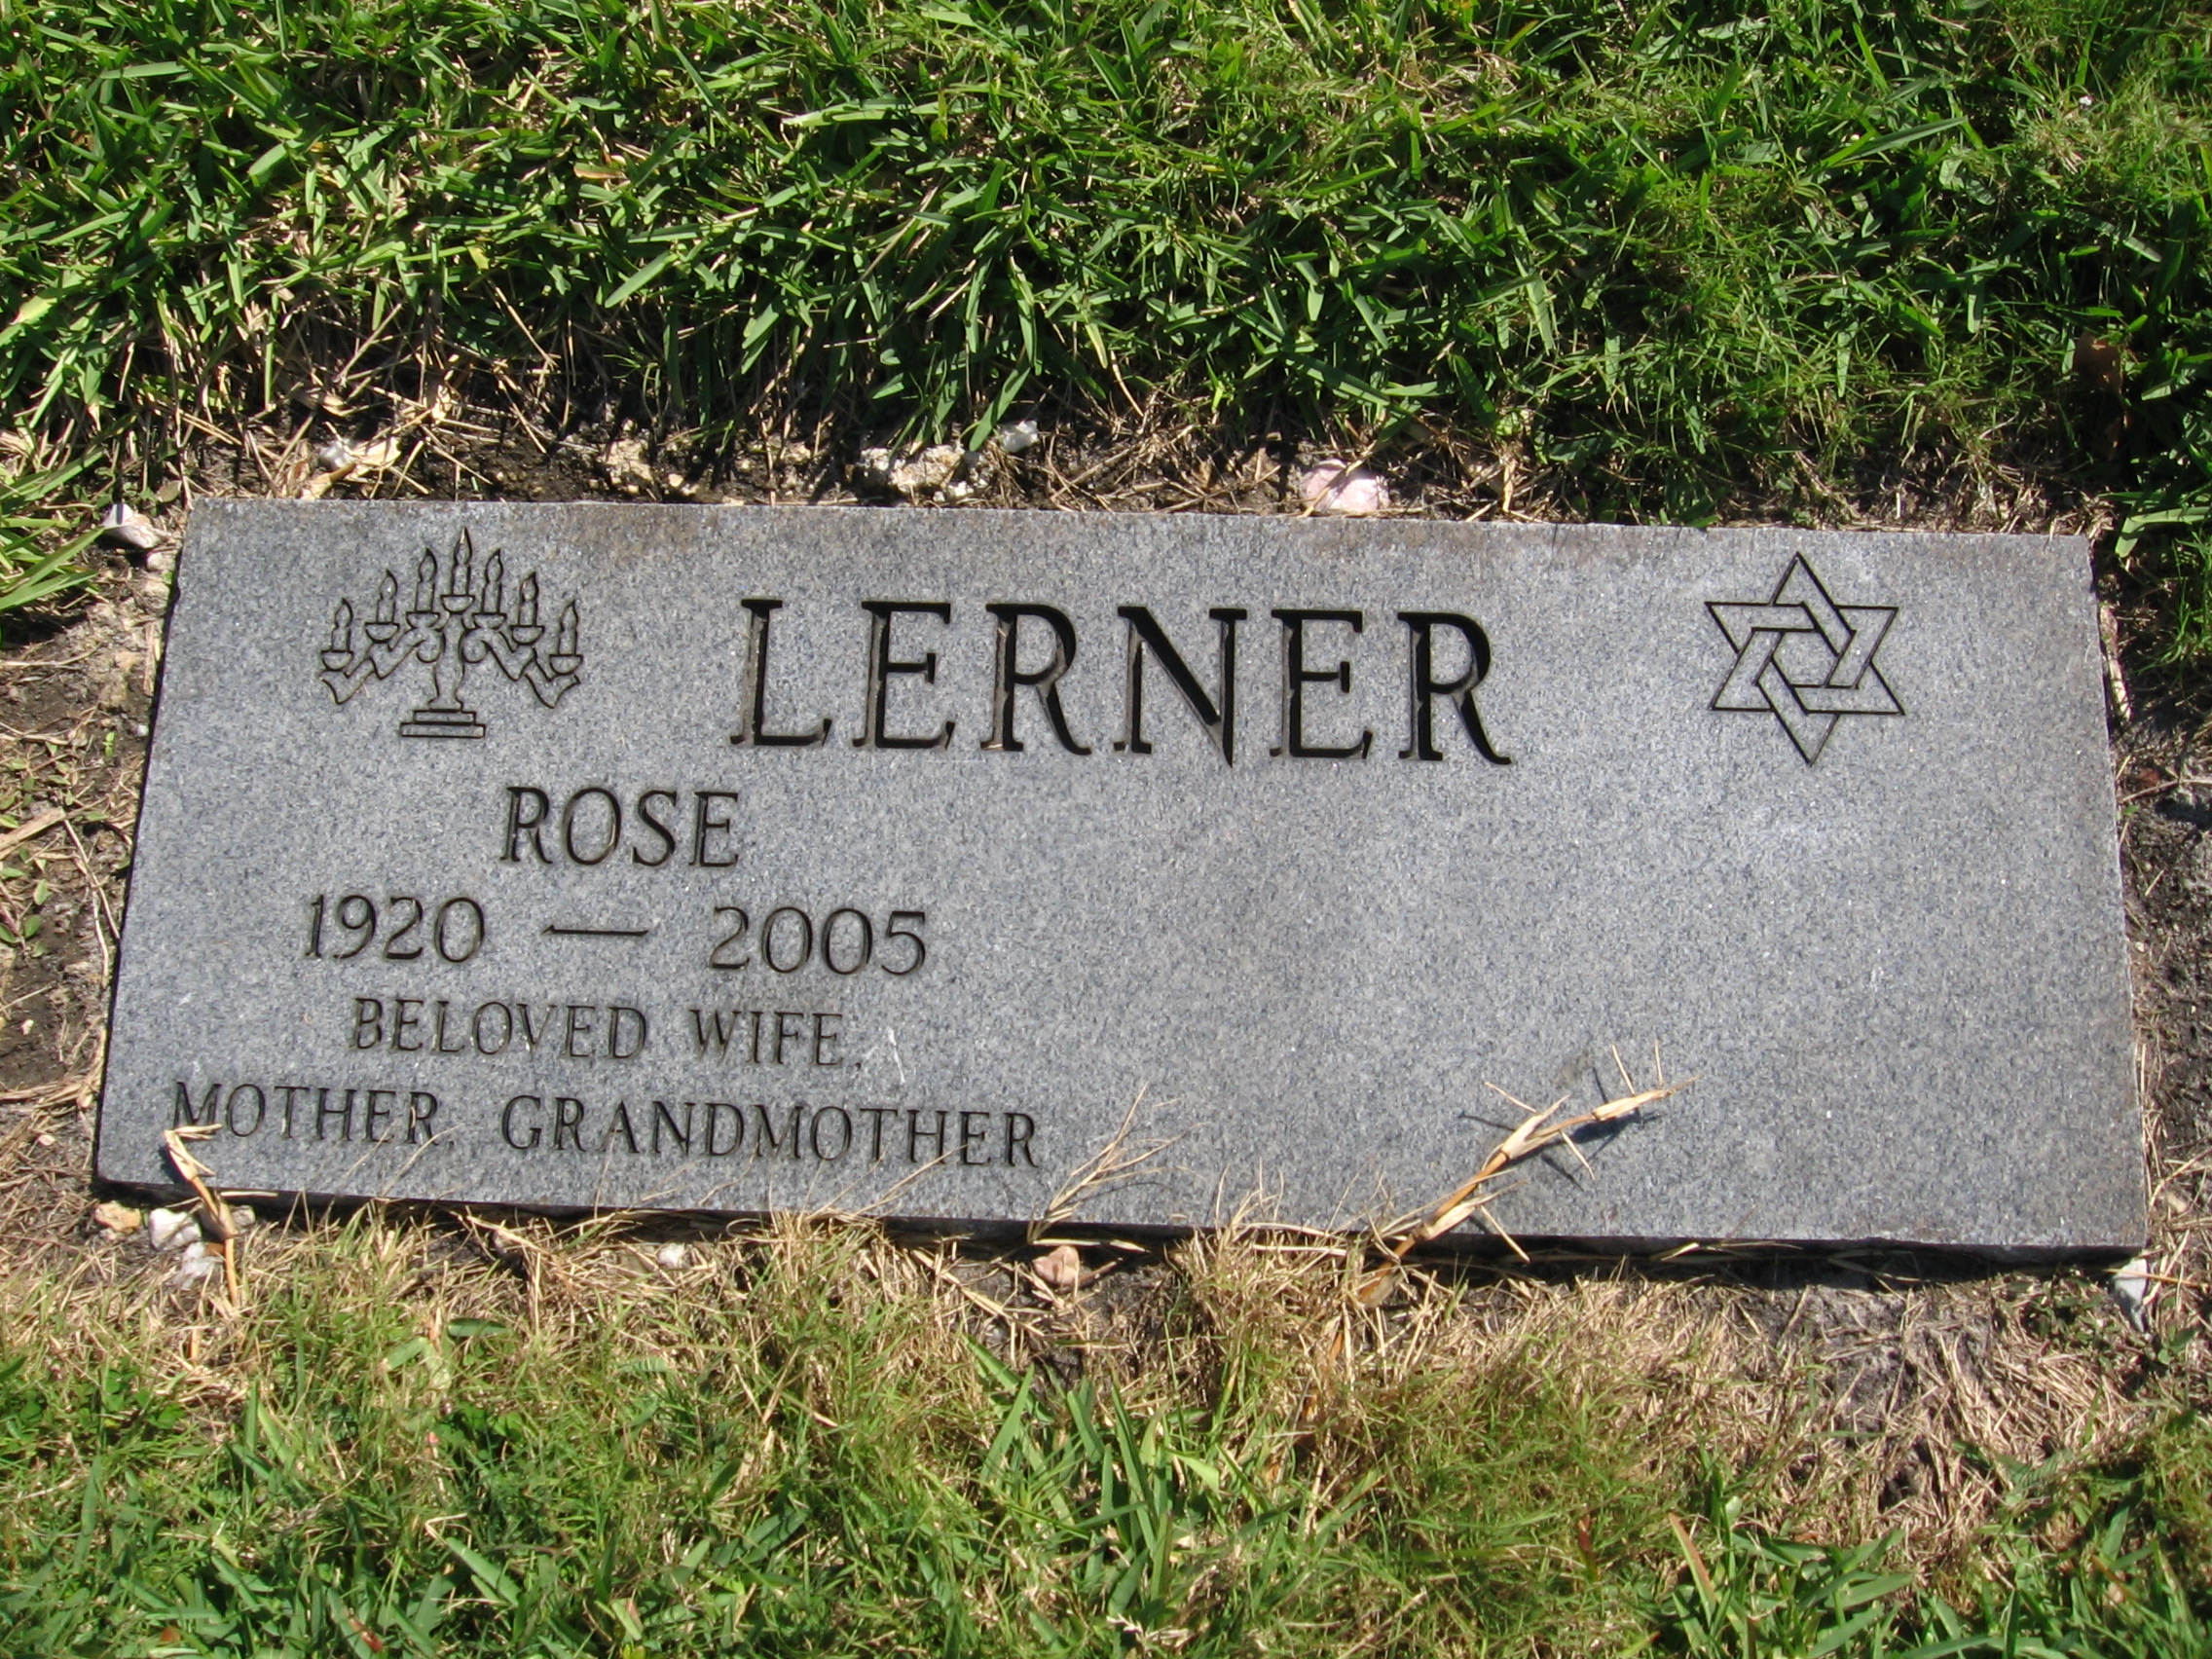 Rose Lerner